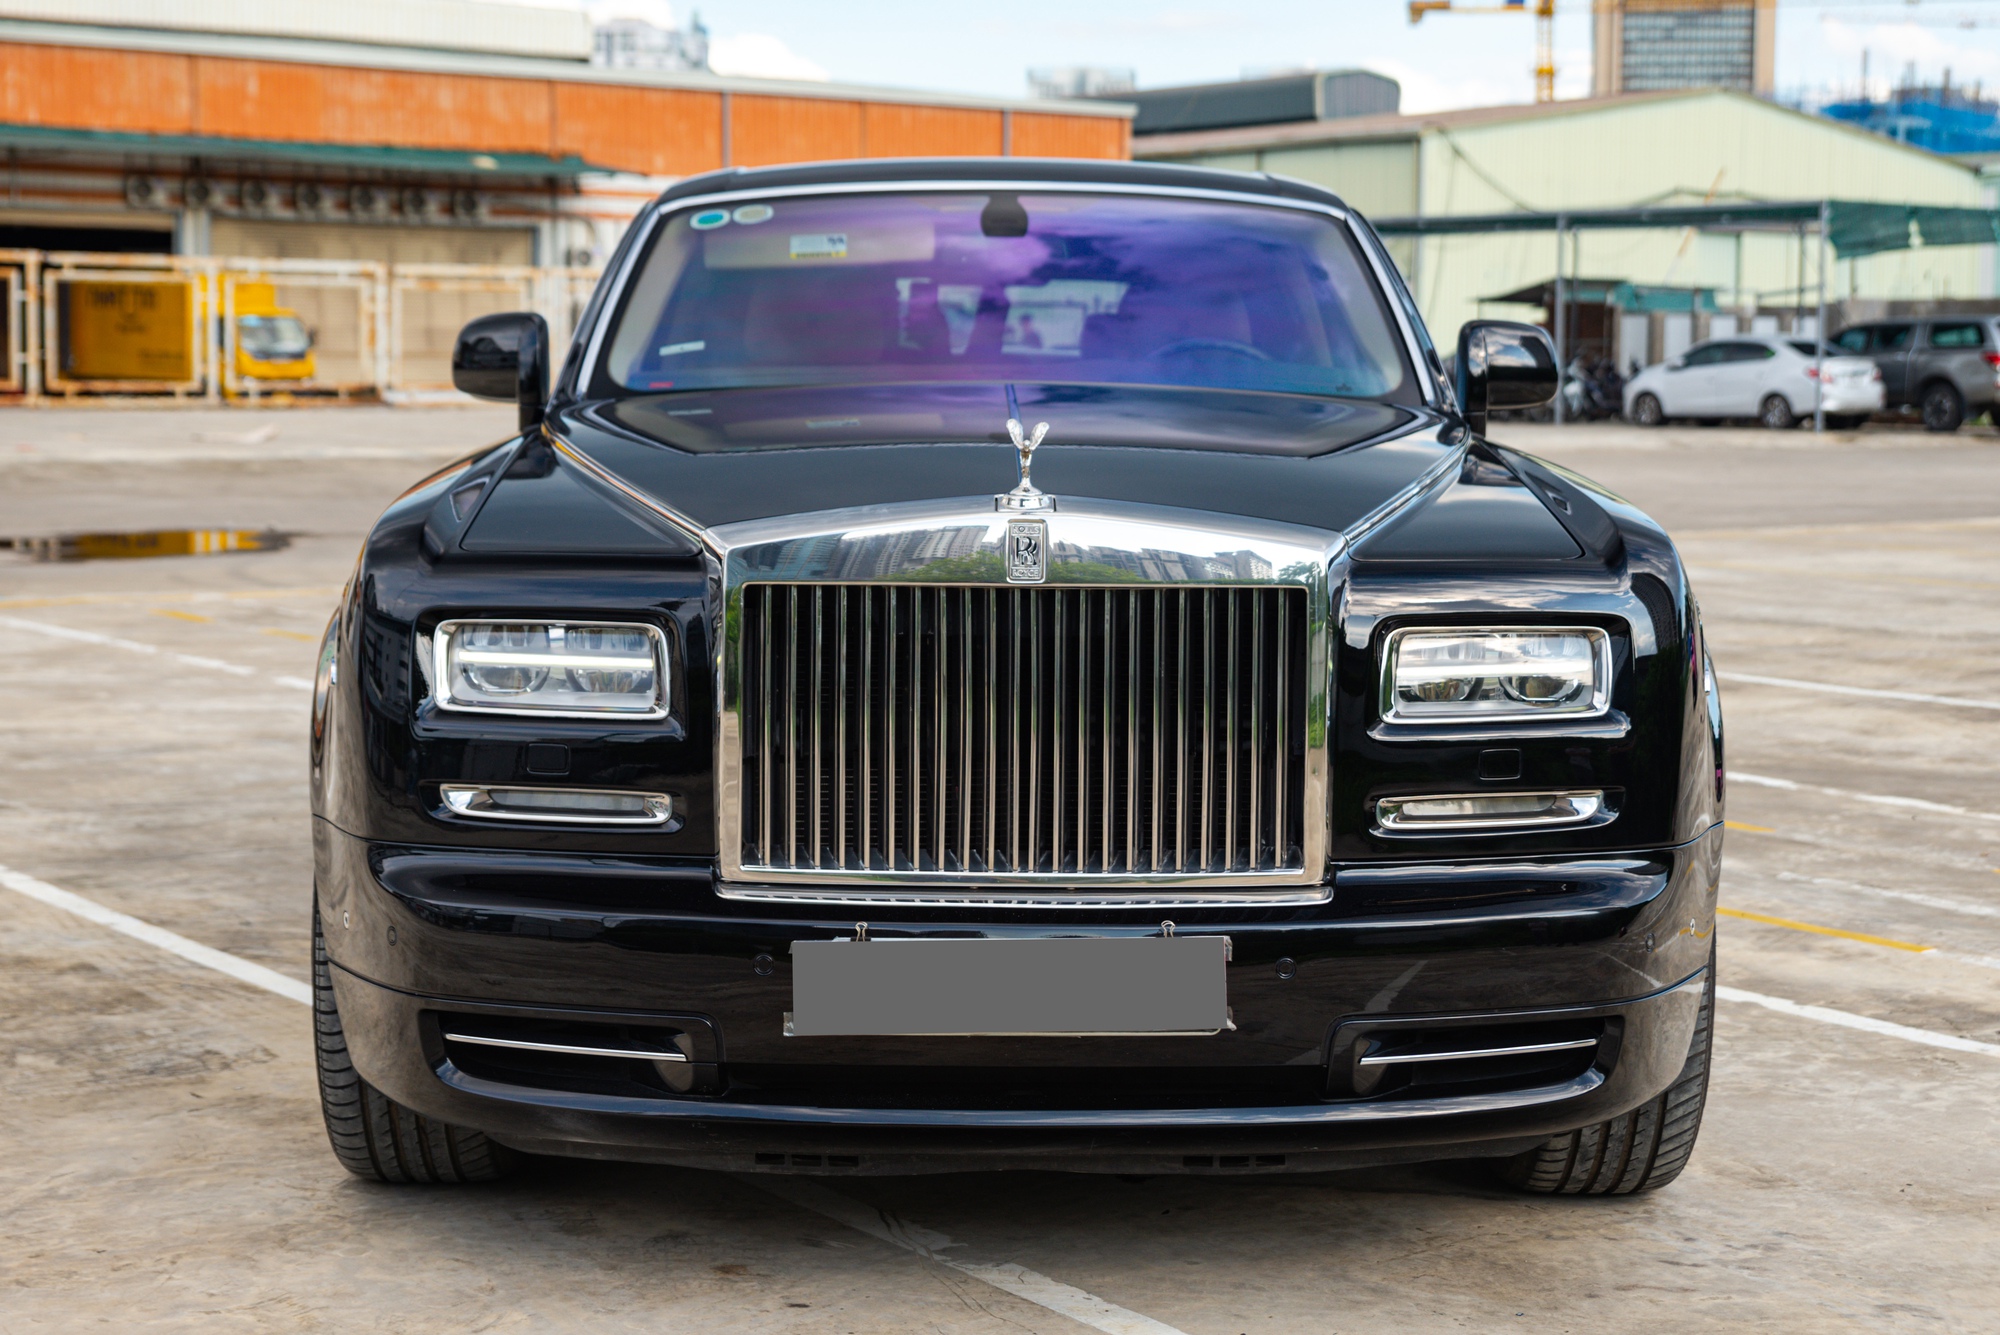 RollsRoyce Phantom  7 Tháng tư 2021  Autogespot